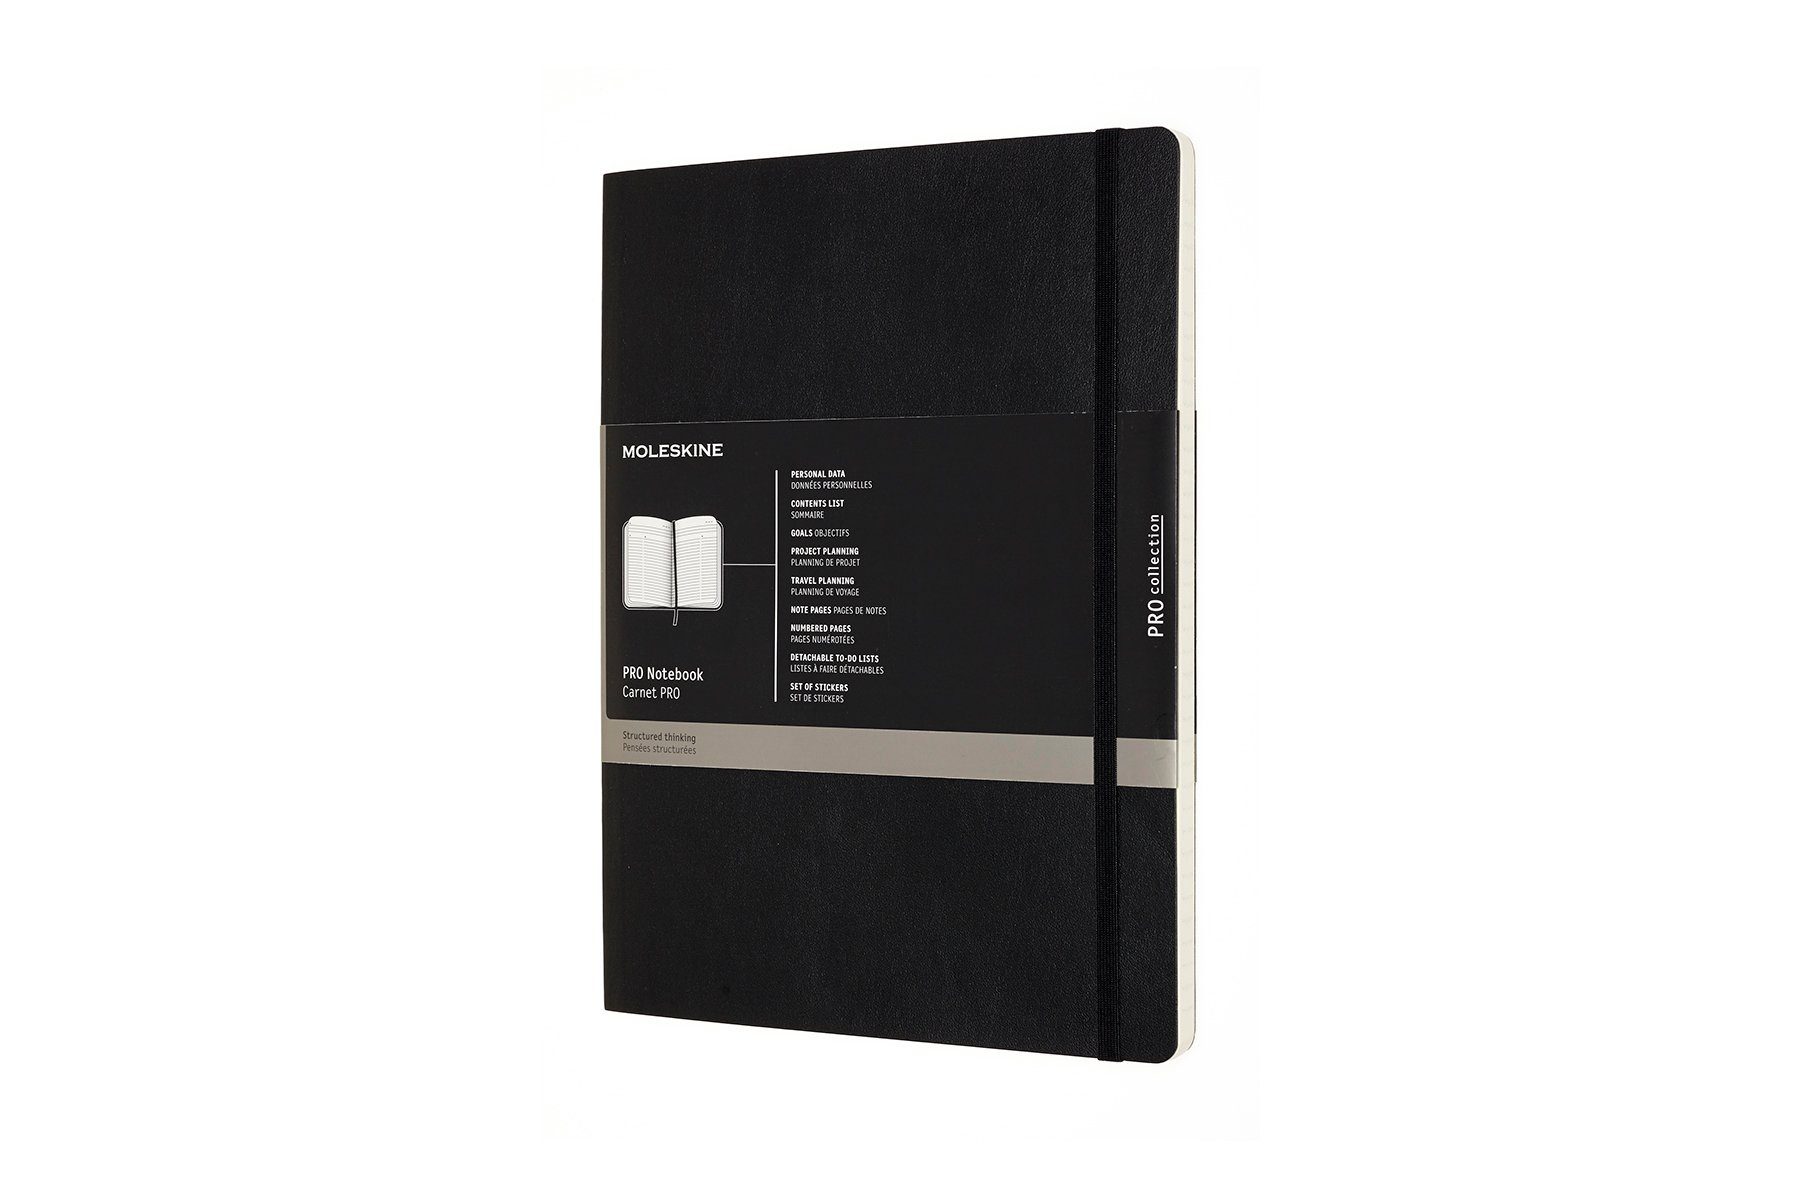 MOLESKINE Notizbuch, Professionel - Weicher Einband - XL (19x25) - Soft Cover - Schwarz